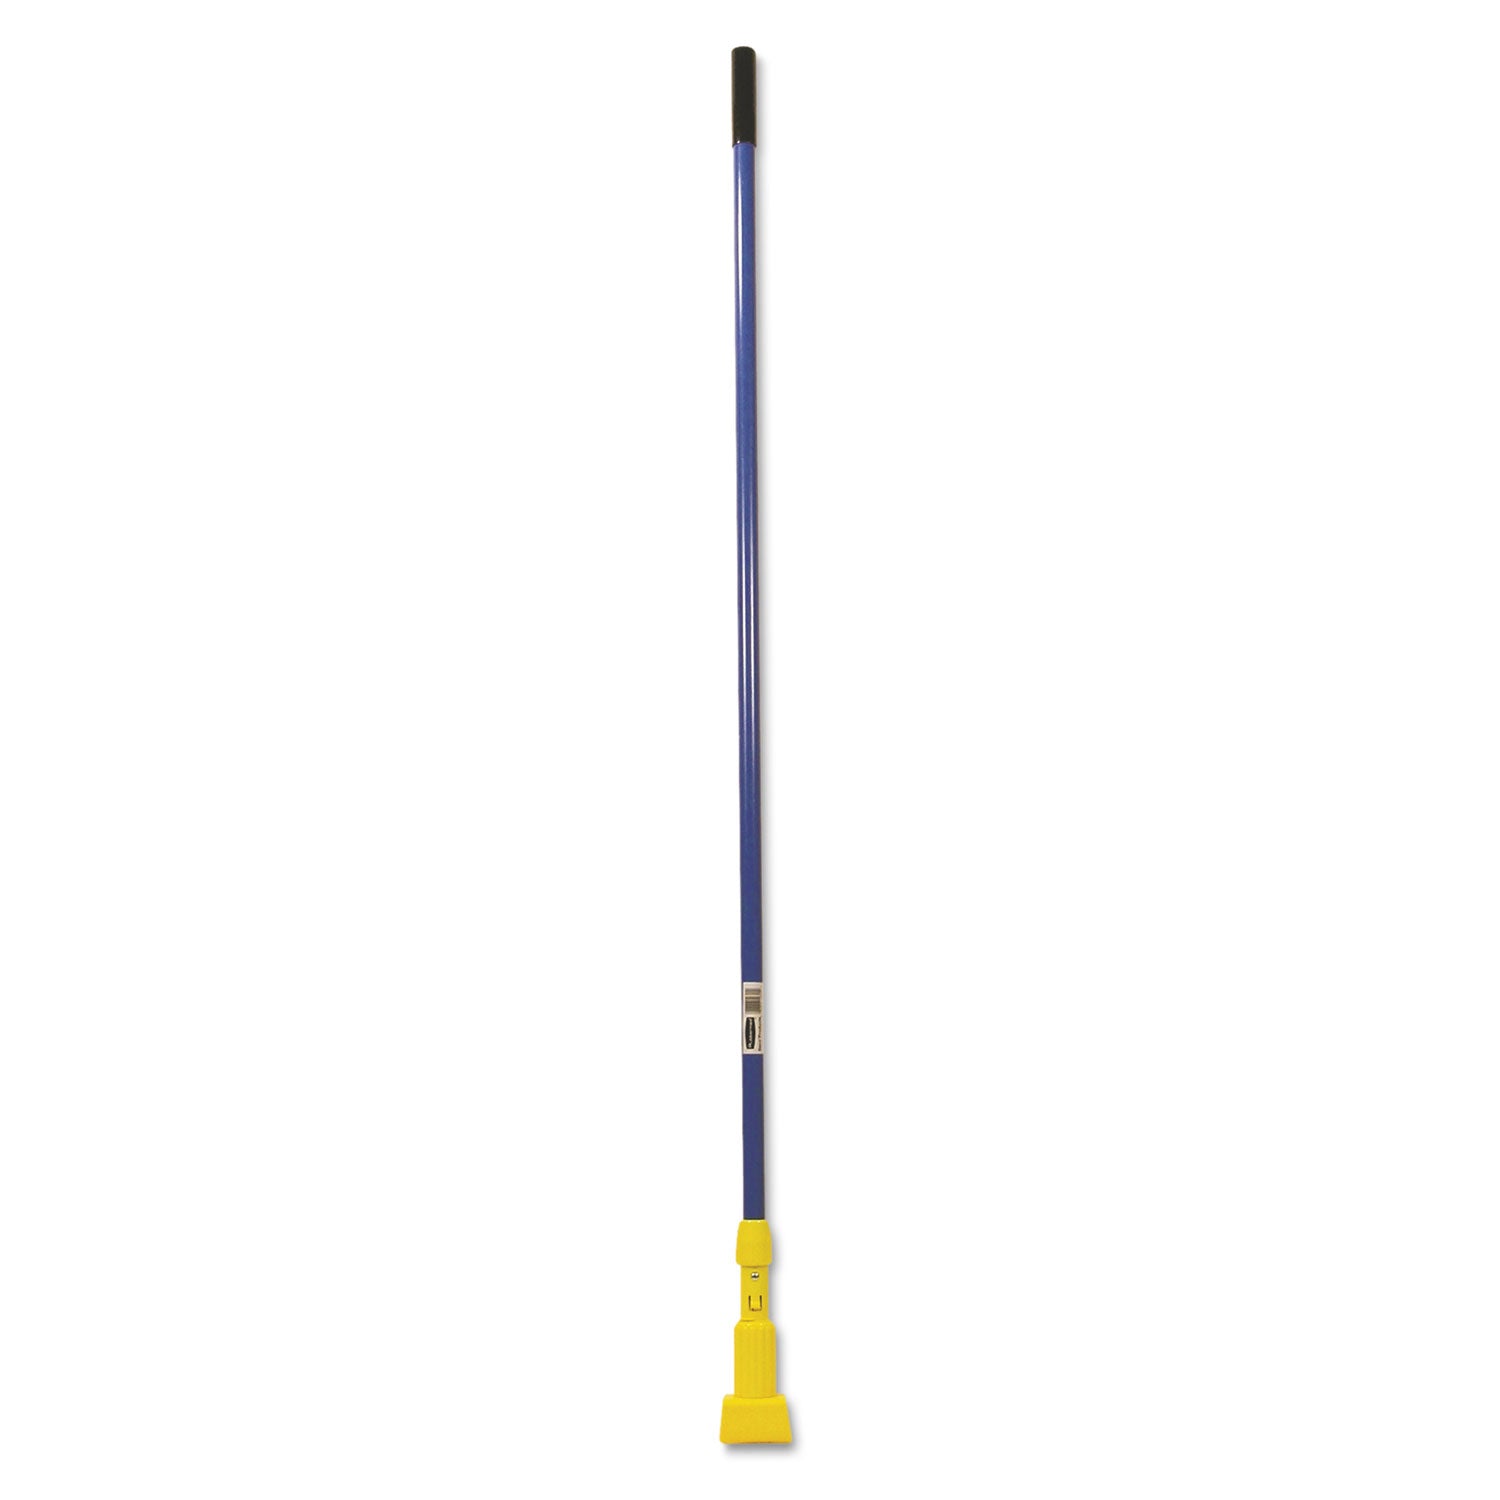 Gripper Fiberglass Mop Handle, 1" dia x 60", Blue/Yellow - 